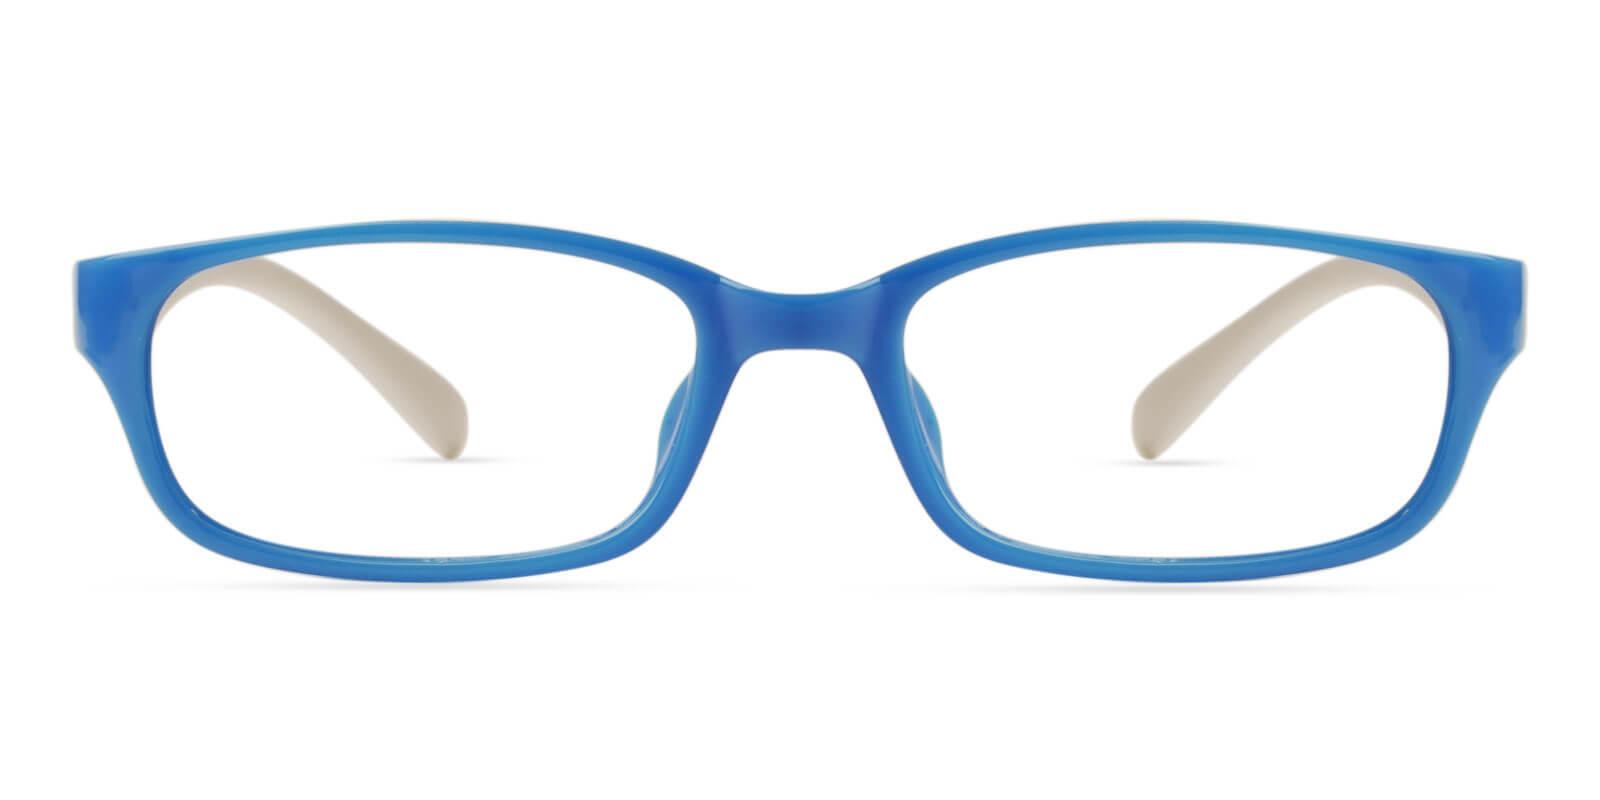 Kids-Phoebe Blue TR Eyeglasses , UniversalBridgeFit , Lightweight Frames from ABBE Glasses